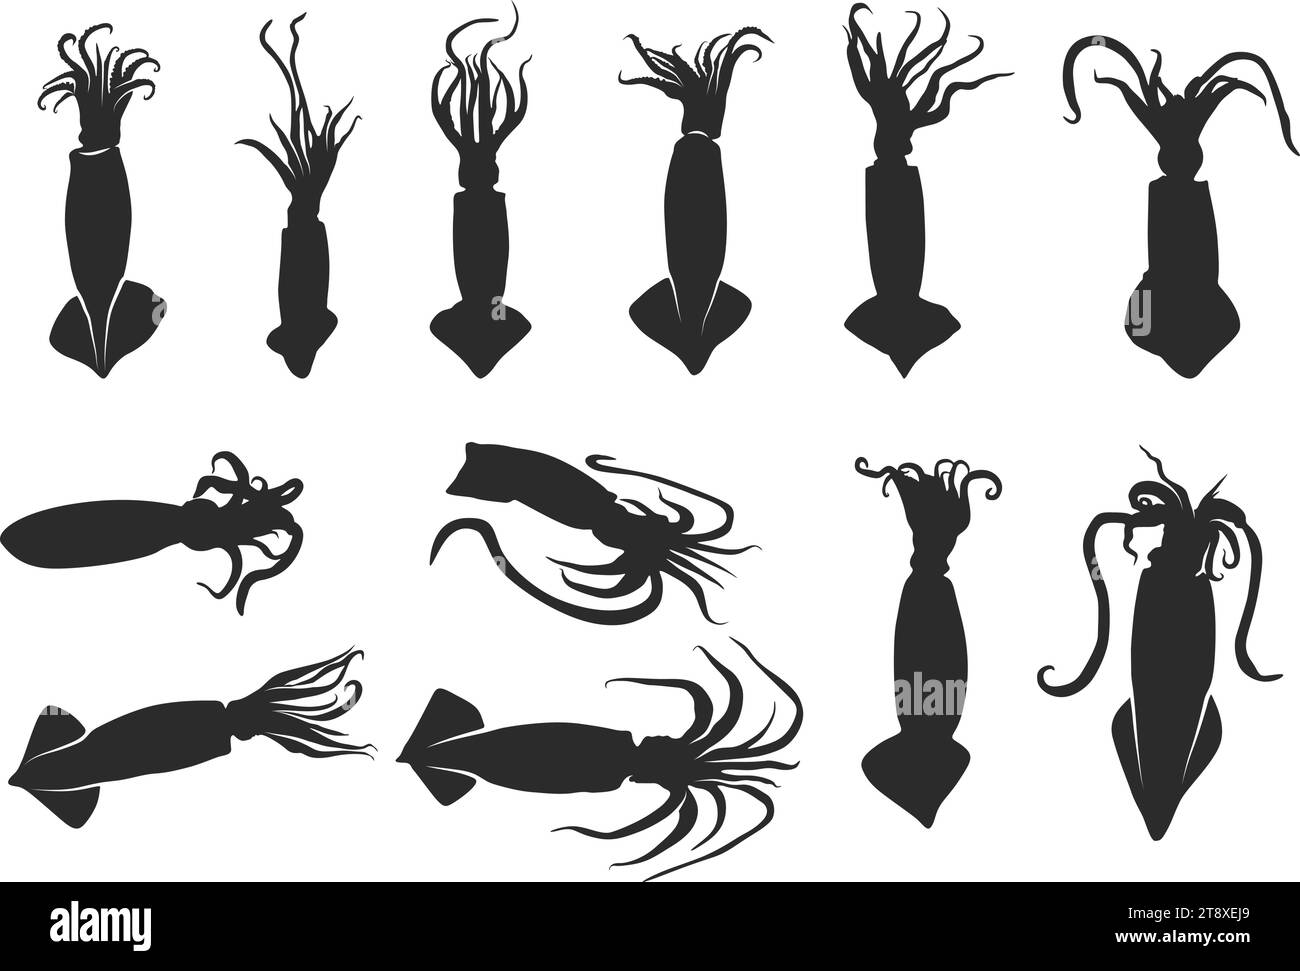 Squid silhouette, Squid clipart, Squid octopus silhouette, Squid vector illustration, Squid icon bundle. Stock Vector